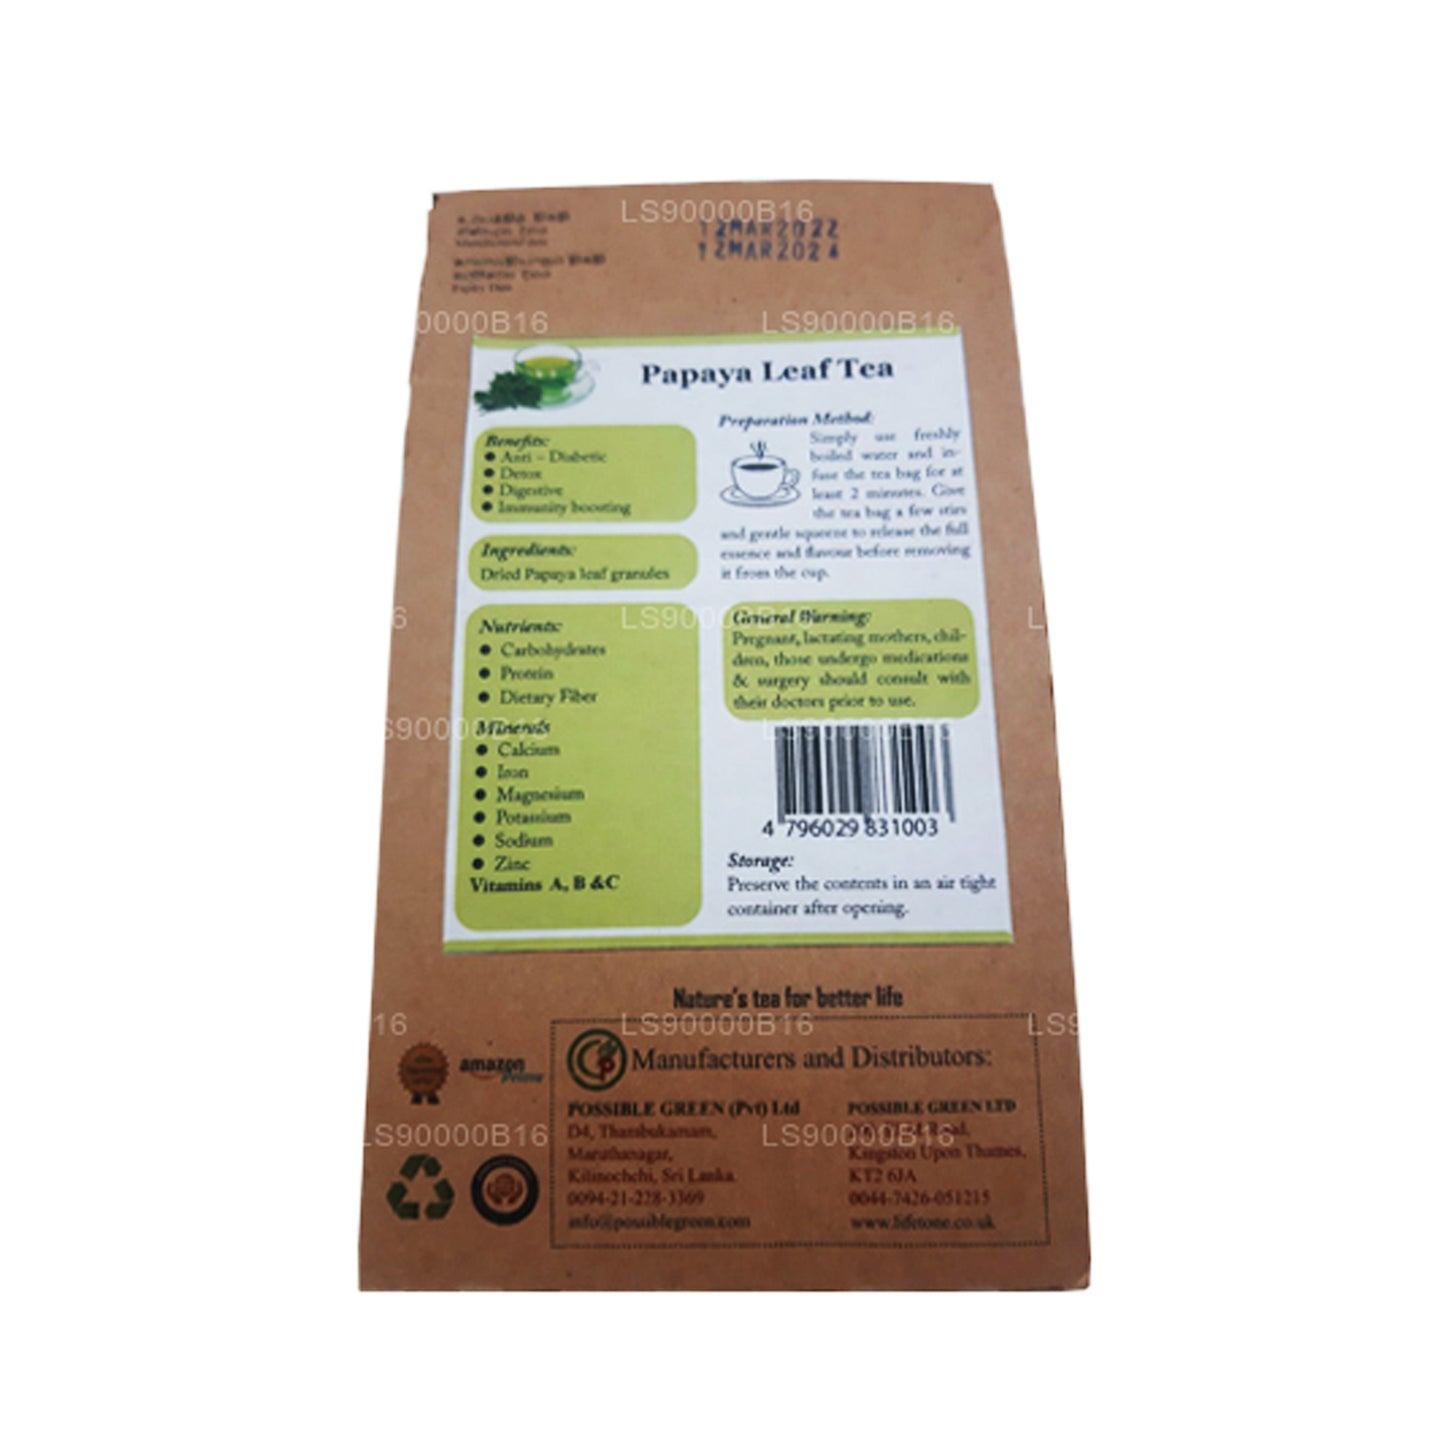 Lifetone Papaya Leaf Tea (30g)